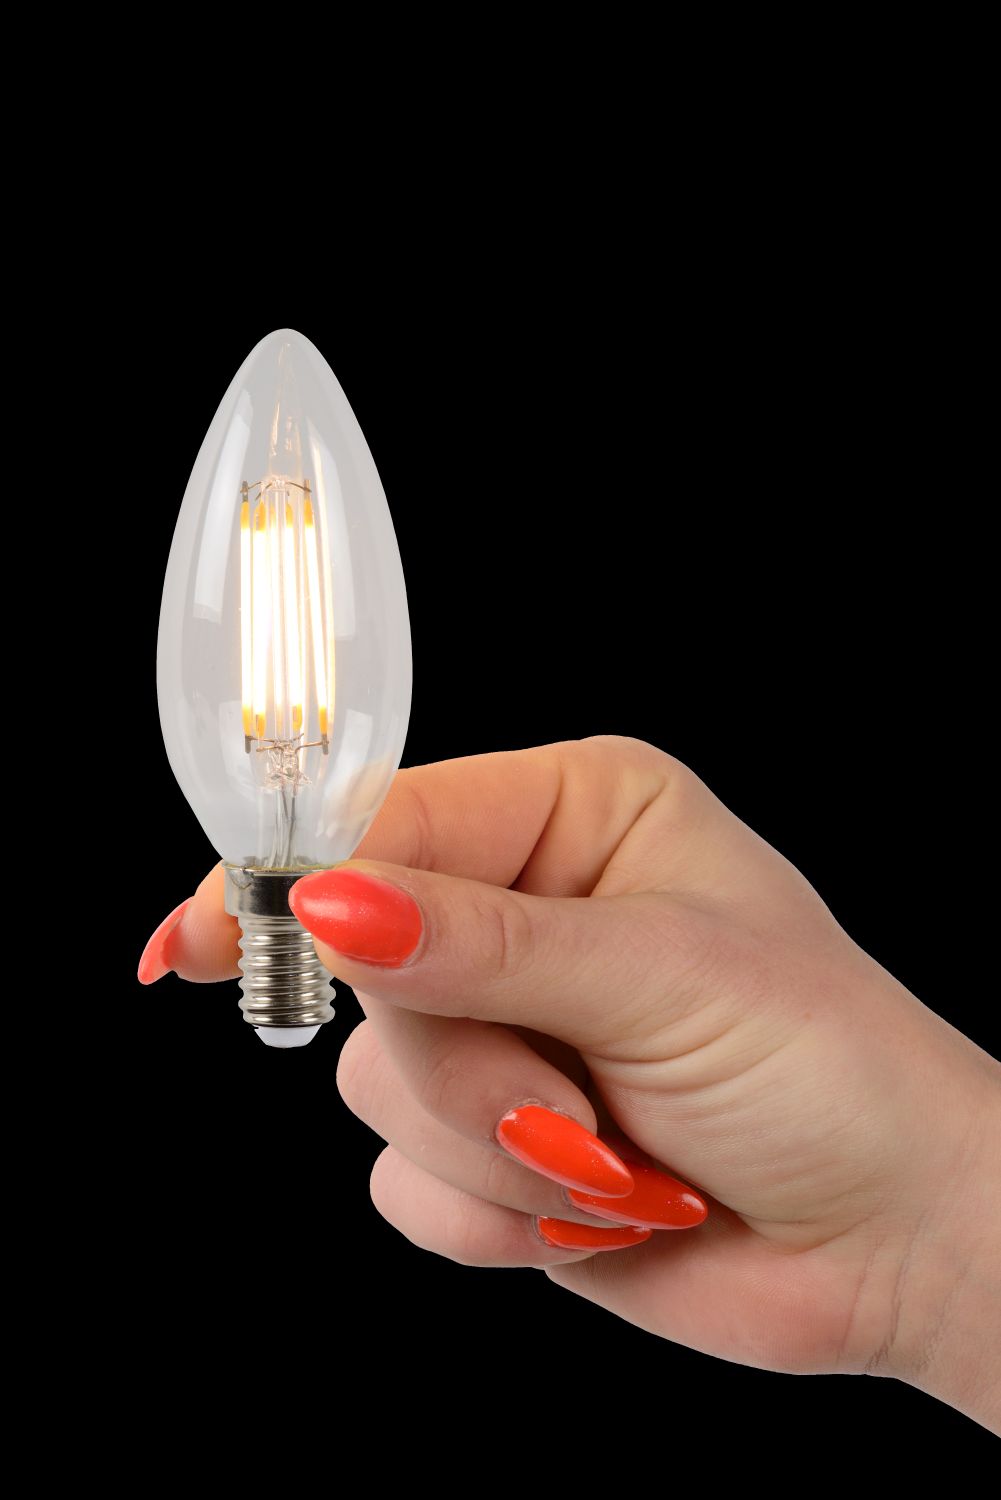 Lucide C35 - Filament lamp - Ø 3,5 cm - LED Dimb. - E14 - 4x4W 2700K - Transparant - Set van 4